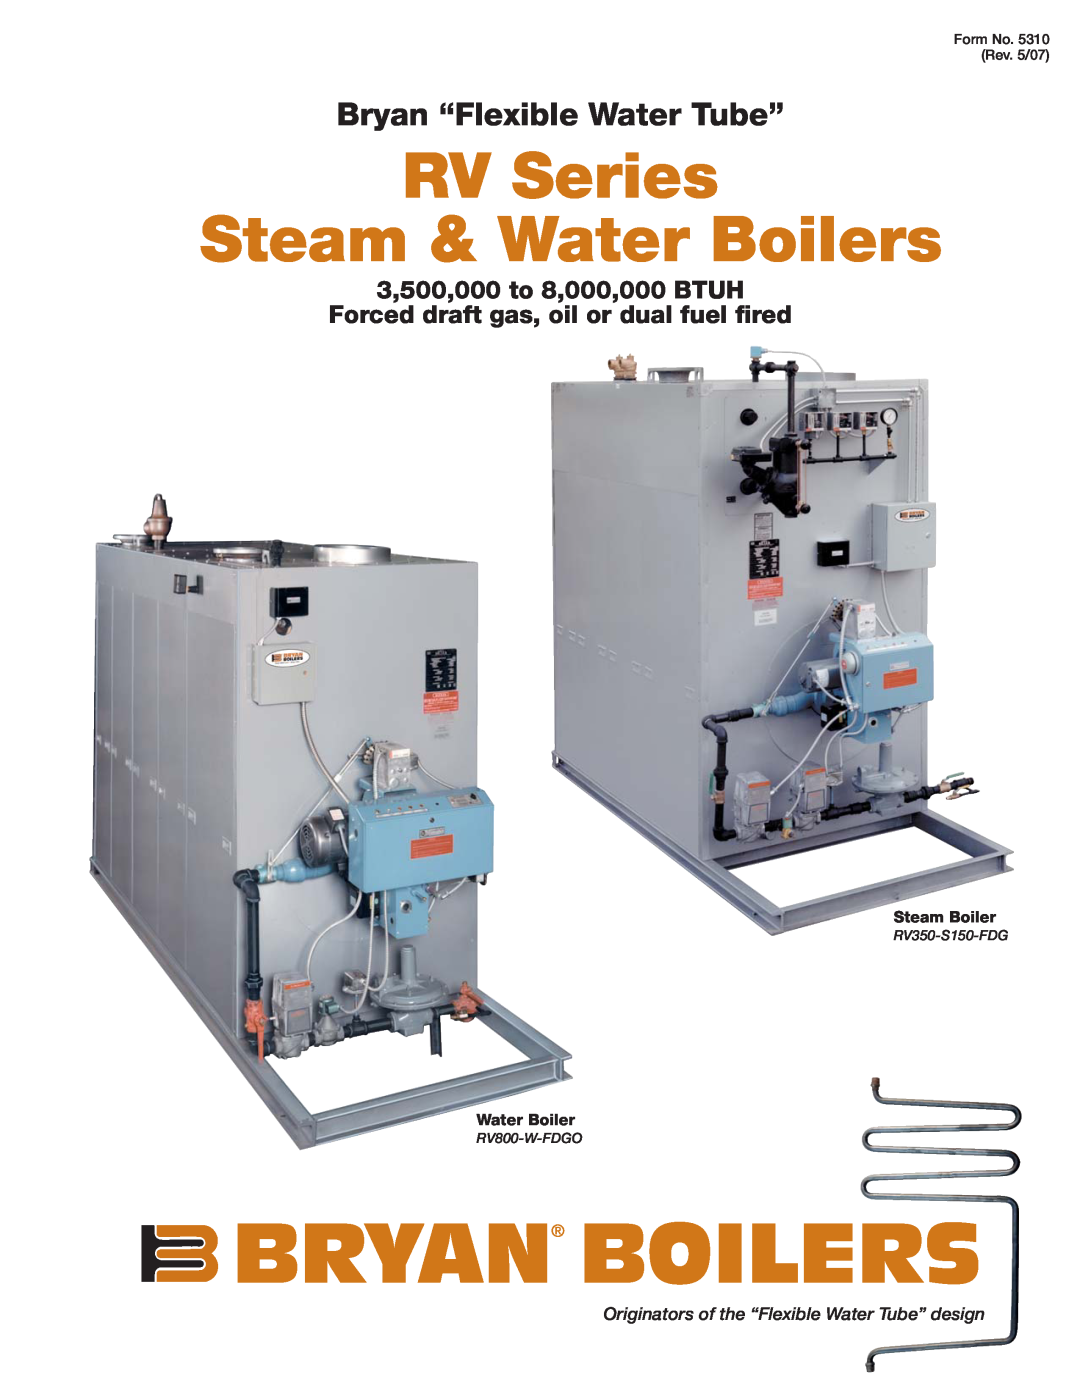 Bryan Boilers manual Bryan Boilers, RV Series Steam & Water Boilers, Bryan “Flexible Water Tube”, Steam Boiler 